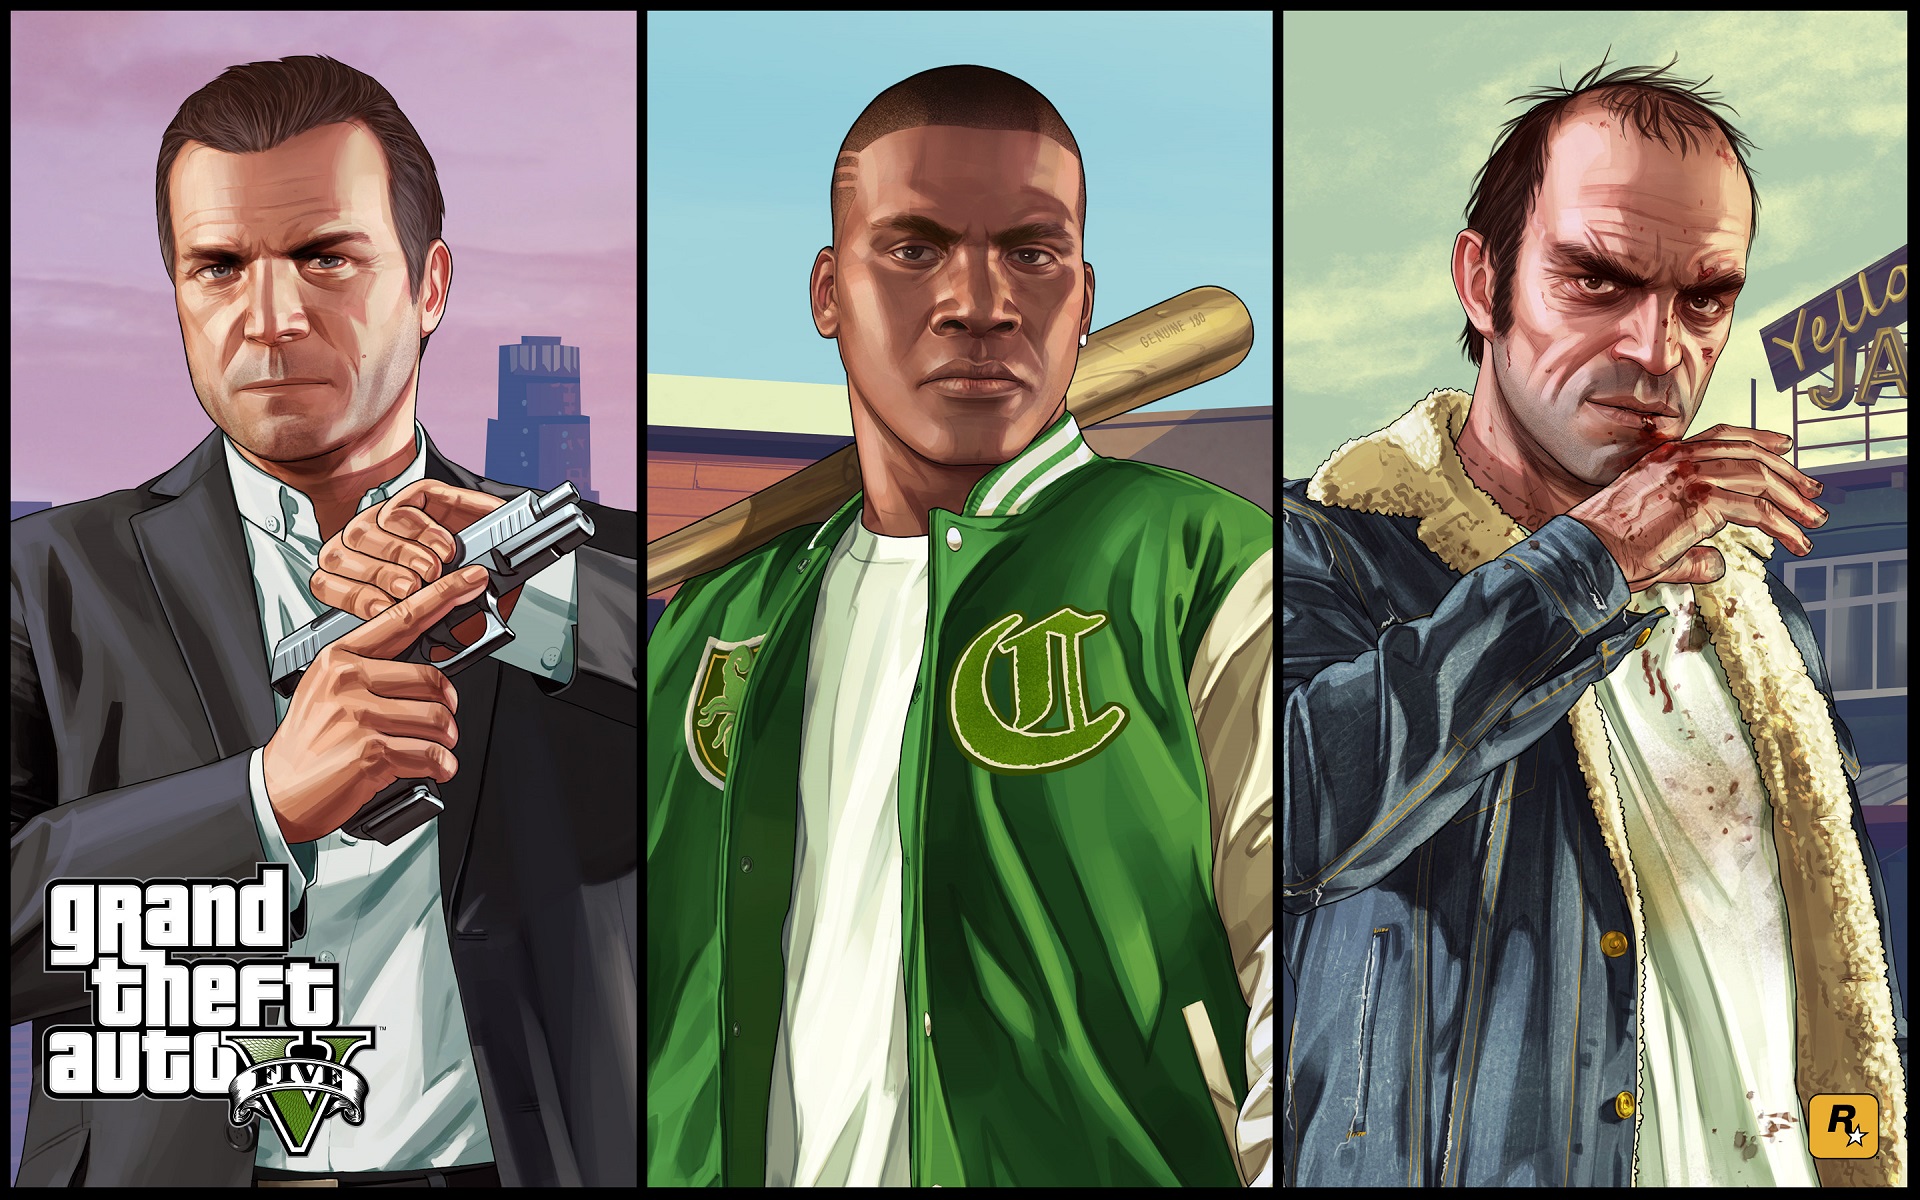 Fondos De Pantalla De Gta 5 Wallpapers Grand Theft Auto V Gratis